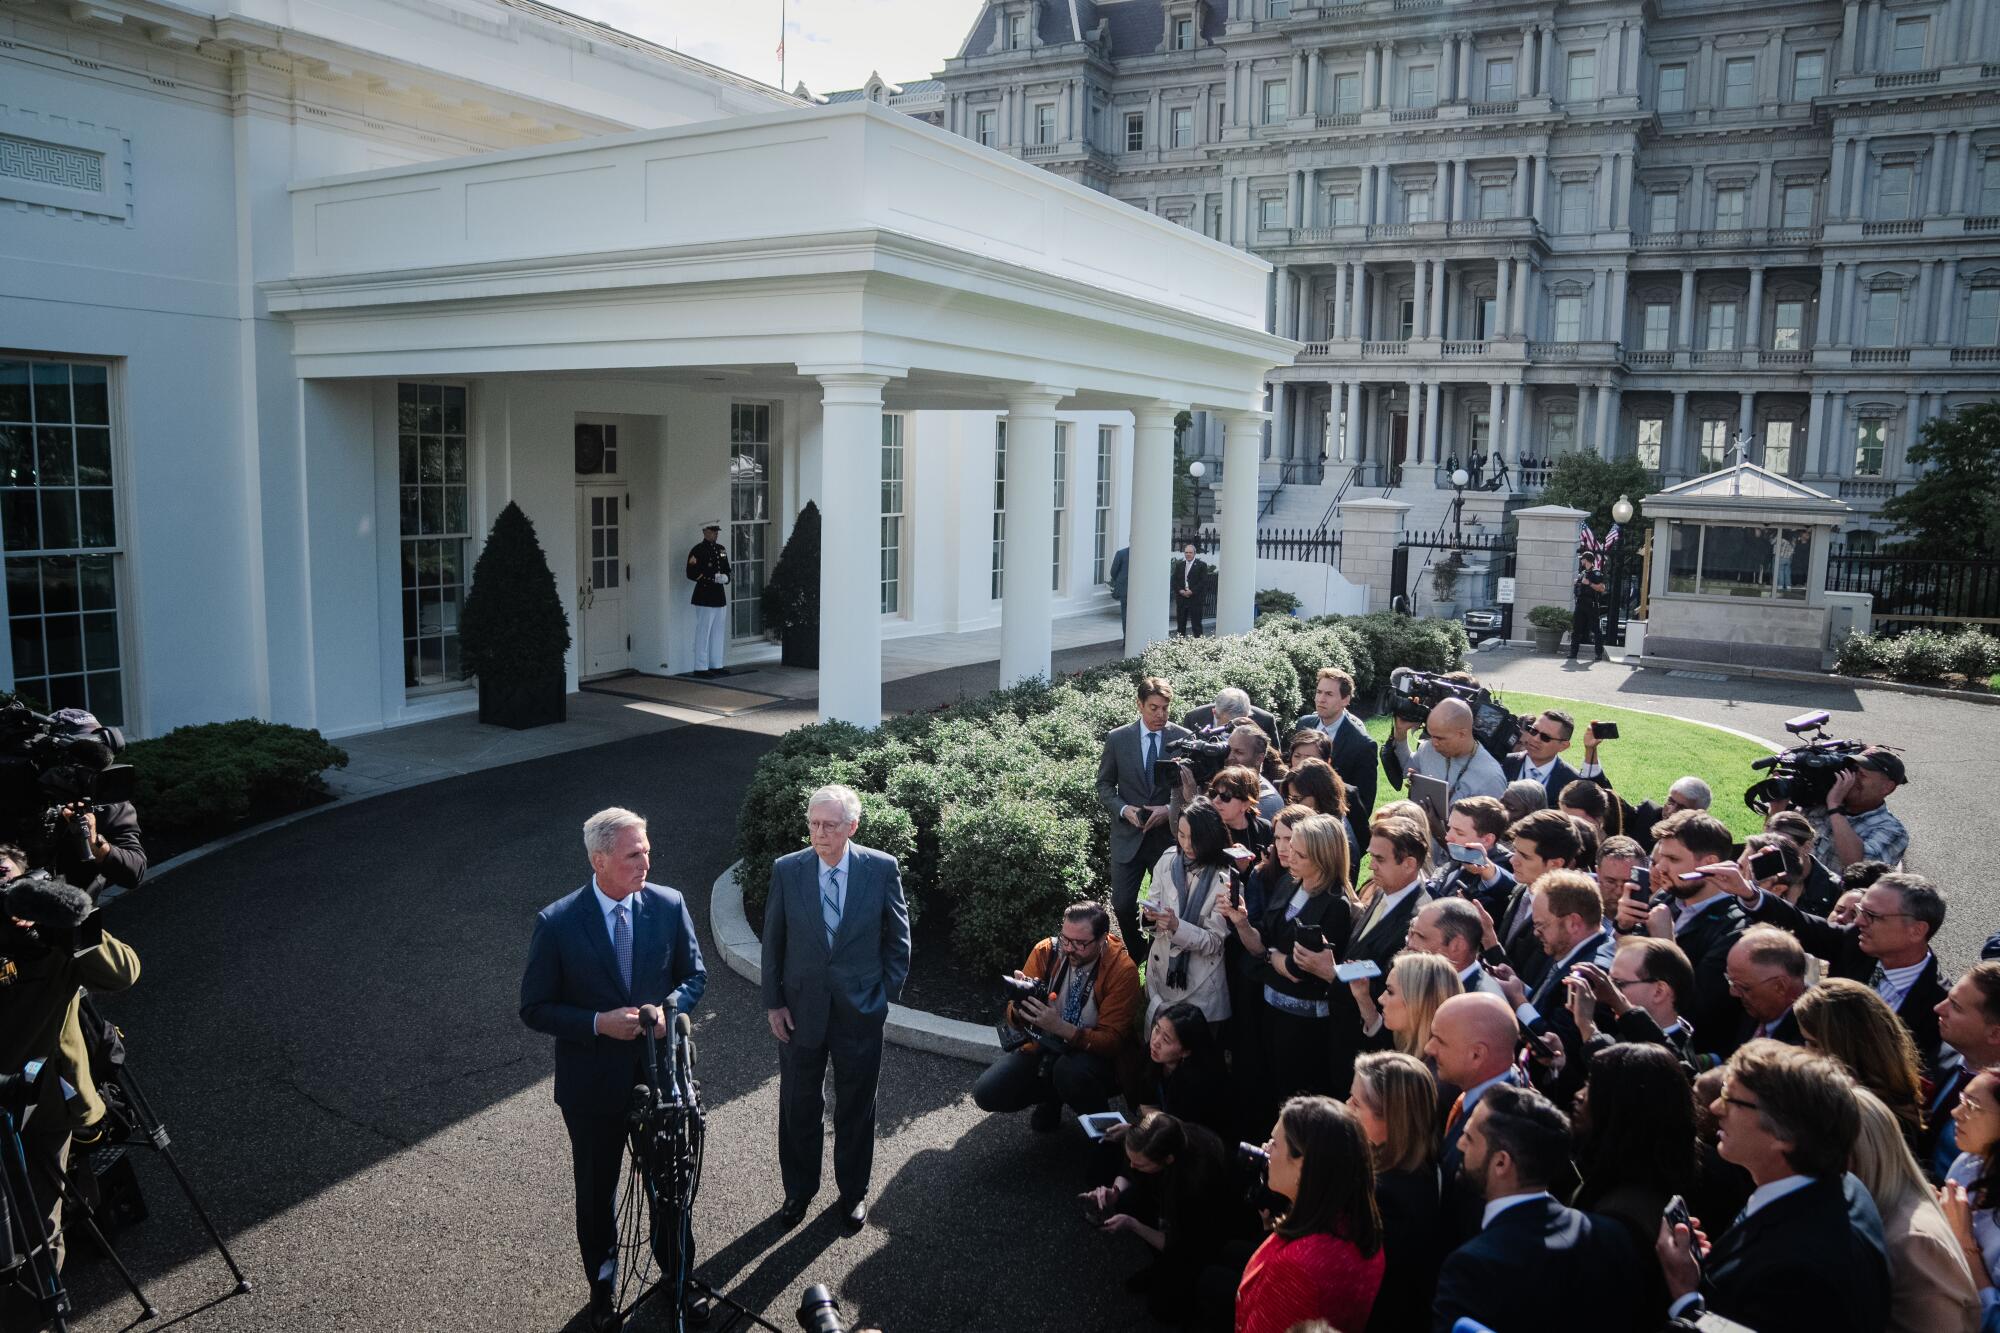 スーツを着た2人の男性がホワイトハウスの近くで他の数人の人々の前に立っています。